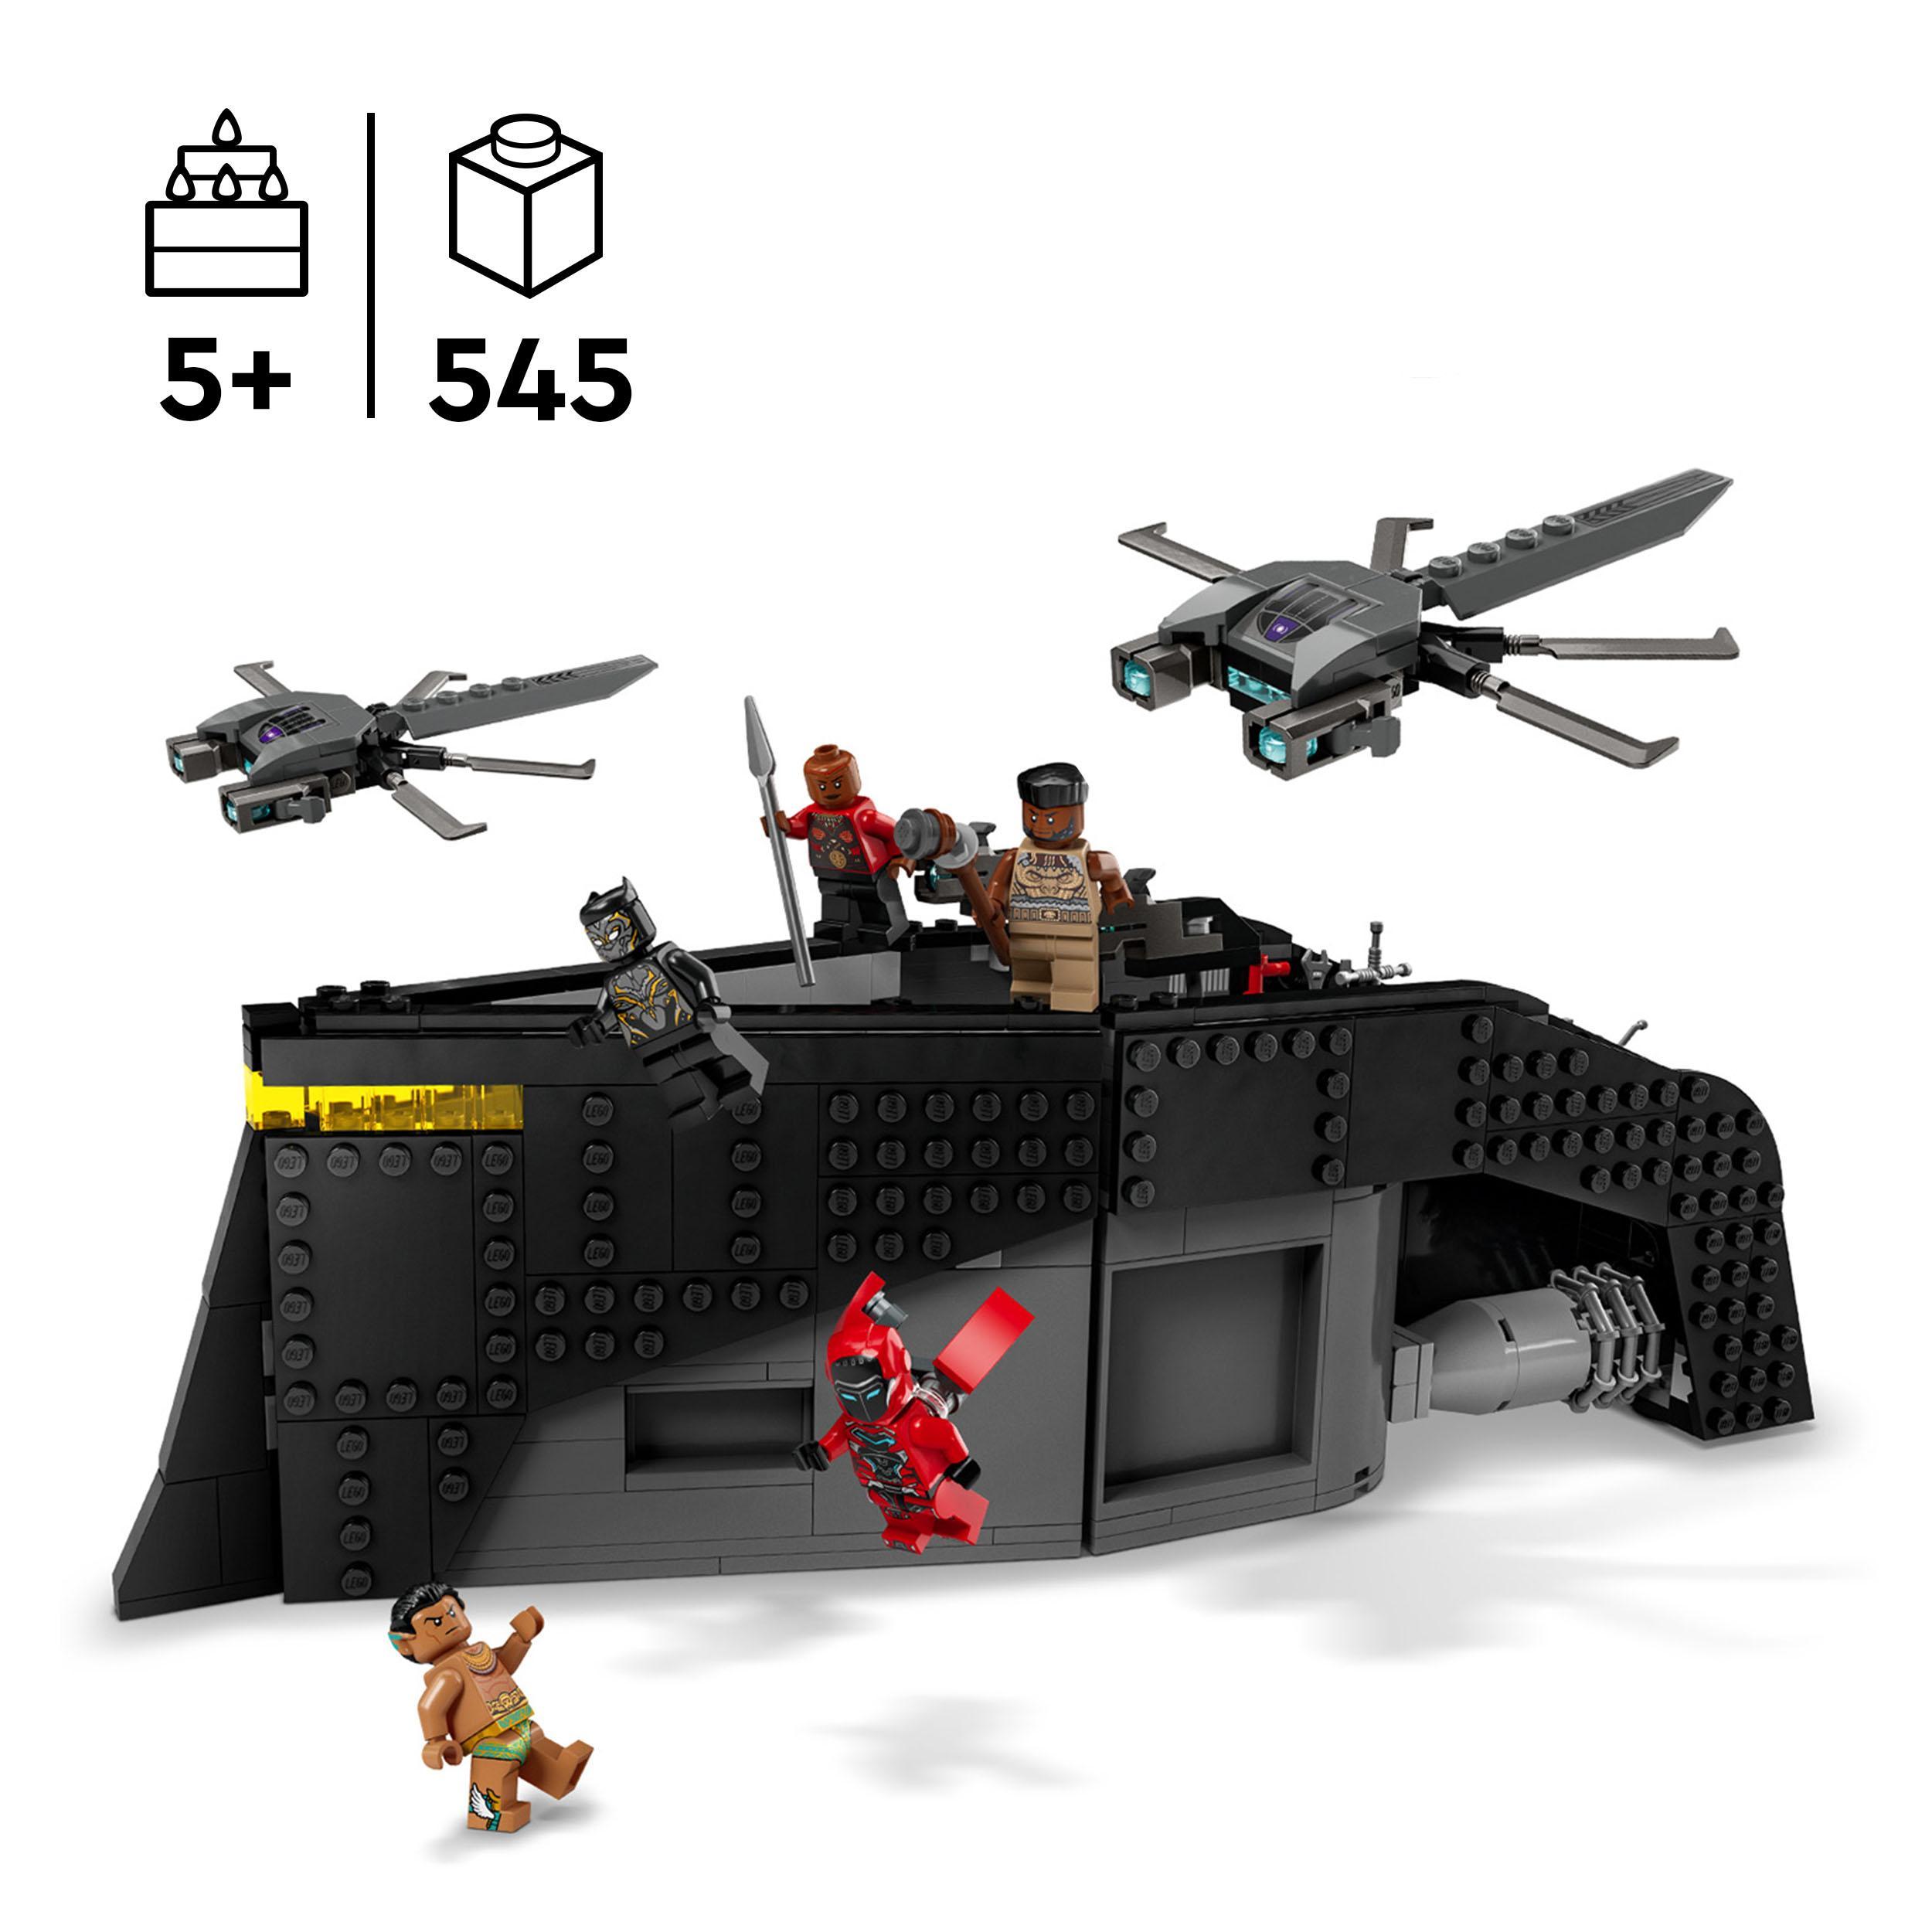 Lego marvel 76214 black panther: guerra sull’acqua! giochi per bambini con nave giocattolo, supereroi dal film wakanda forever - LEGO SUPER HEROES, Avengers, Lego